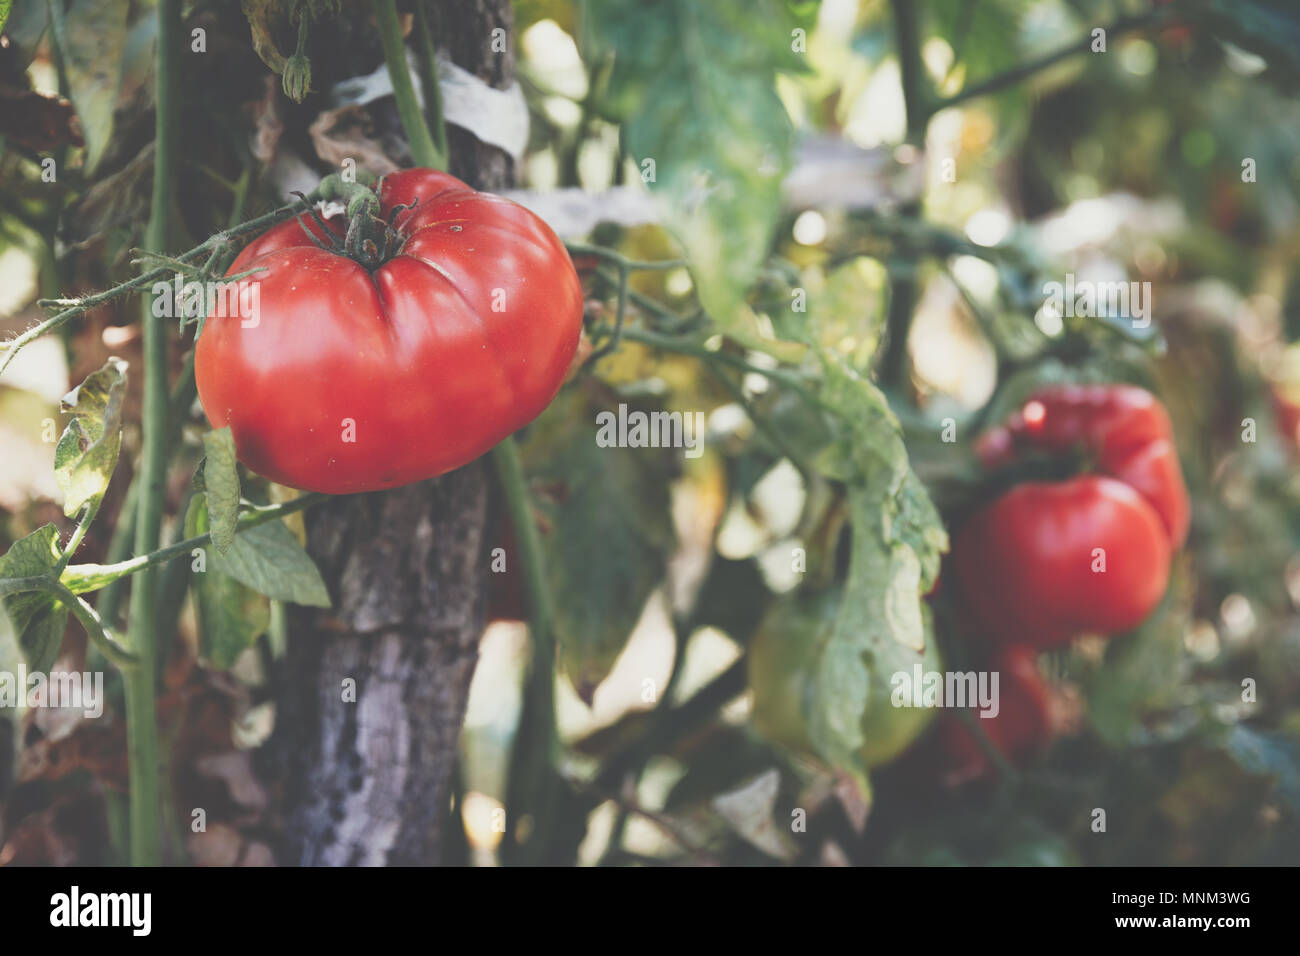 Pomodori organico in una serra. Giardino rossi freschi pomodori maturi sulla vite. Deliziosi pomodori freschi che crescono in un giardino di close-up. Profondità di fiel Foto Stock